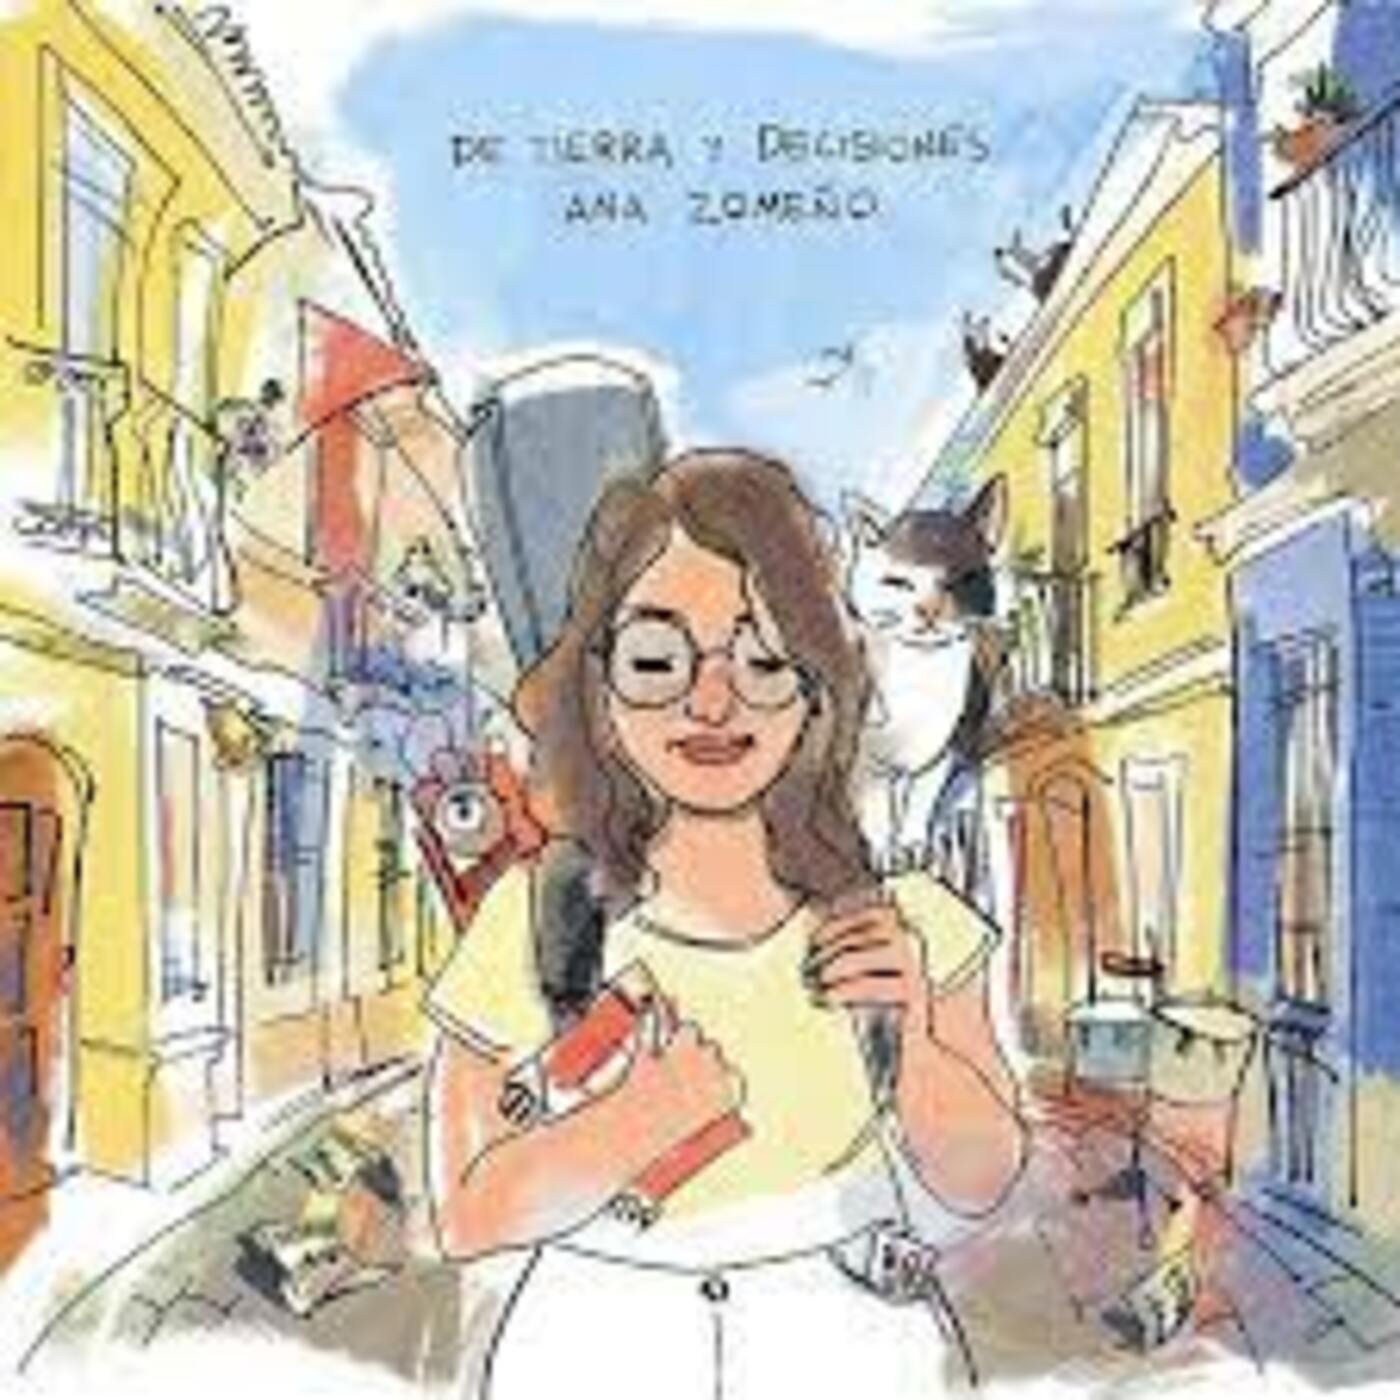 Ana Zomeño - De tierra y decisiones | musica en valencià